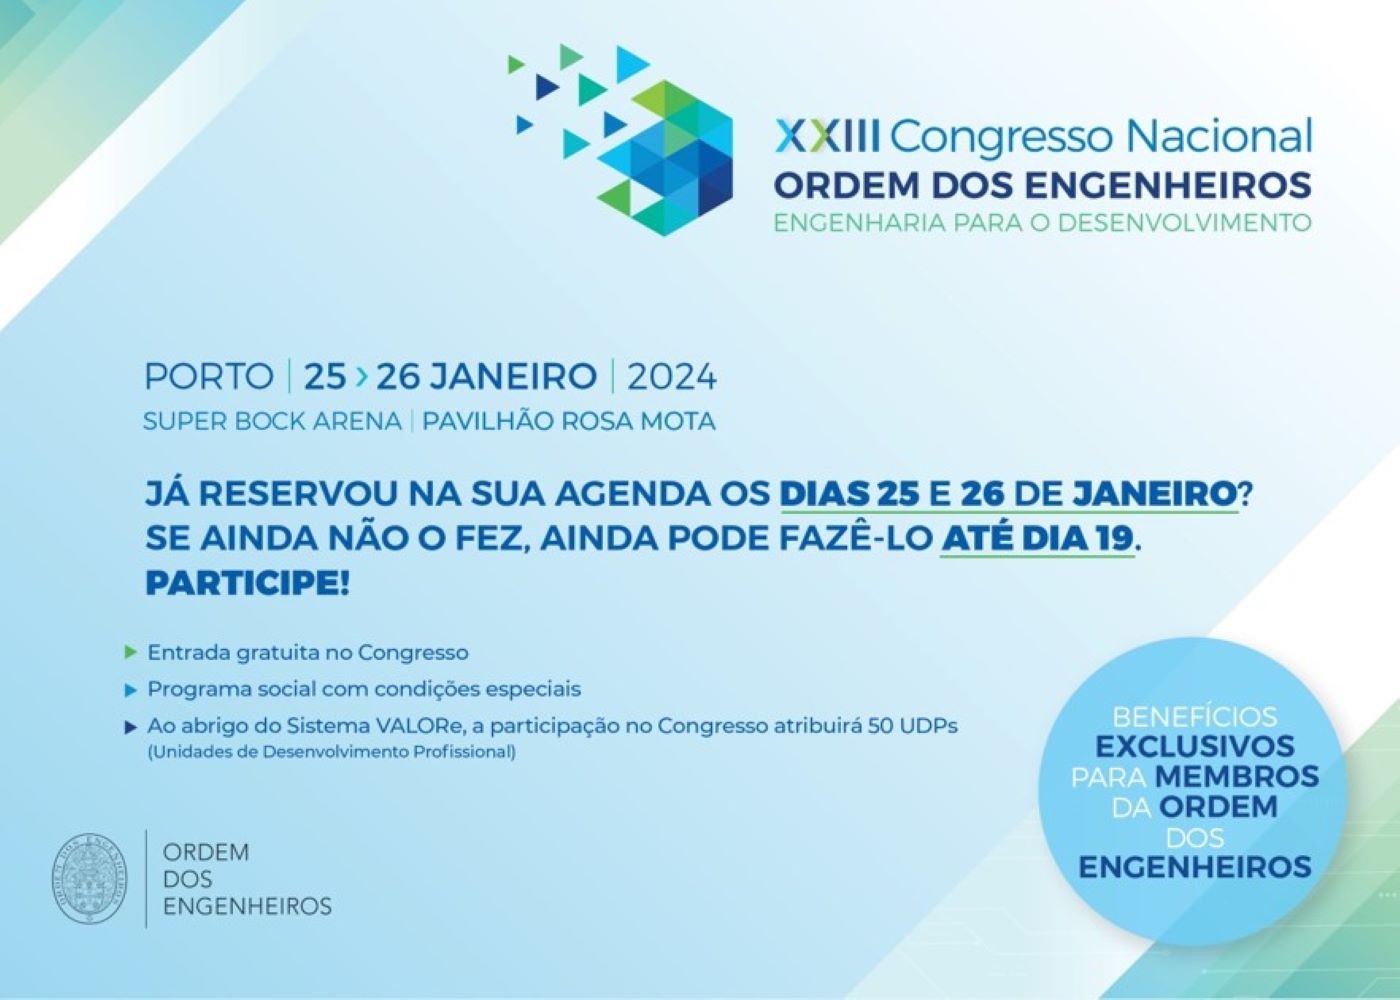 XXIII Congresso Nacional da Ordem dos Engenheiros - Engenharia para o Desenvolvimento